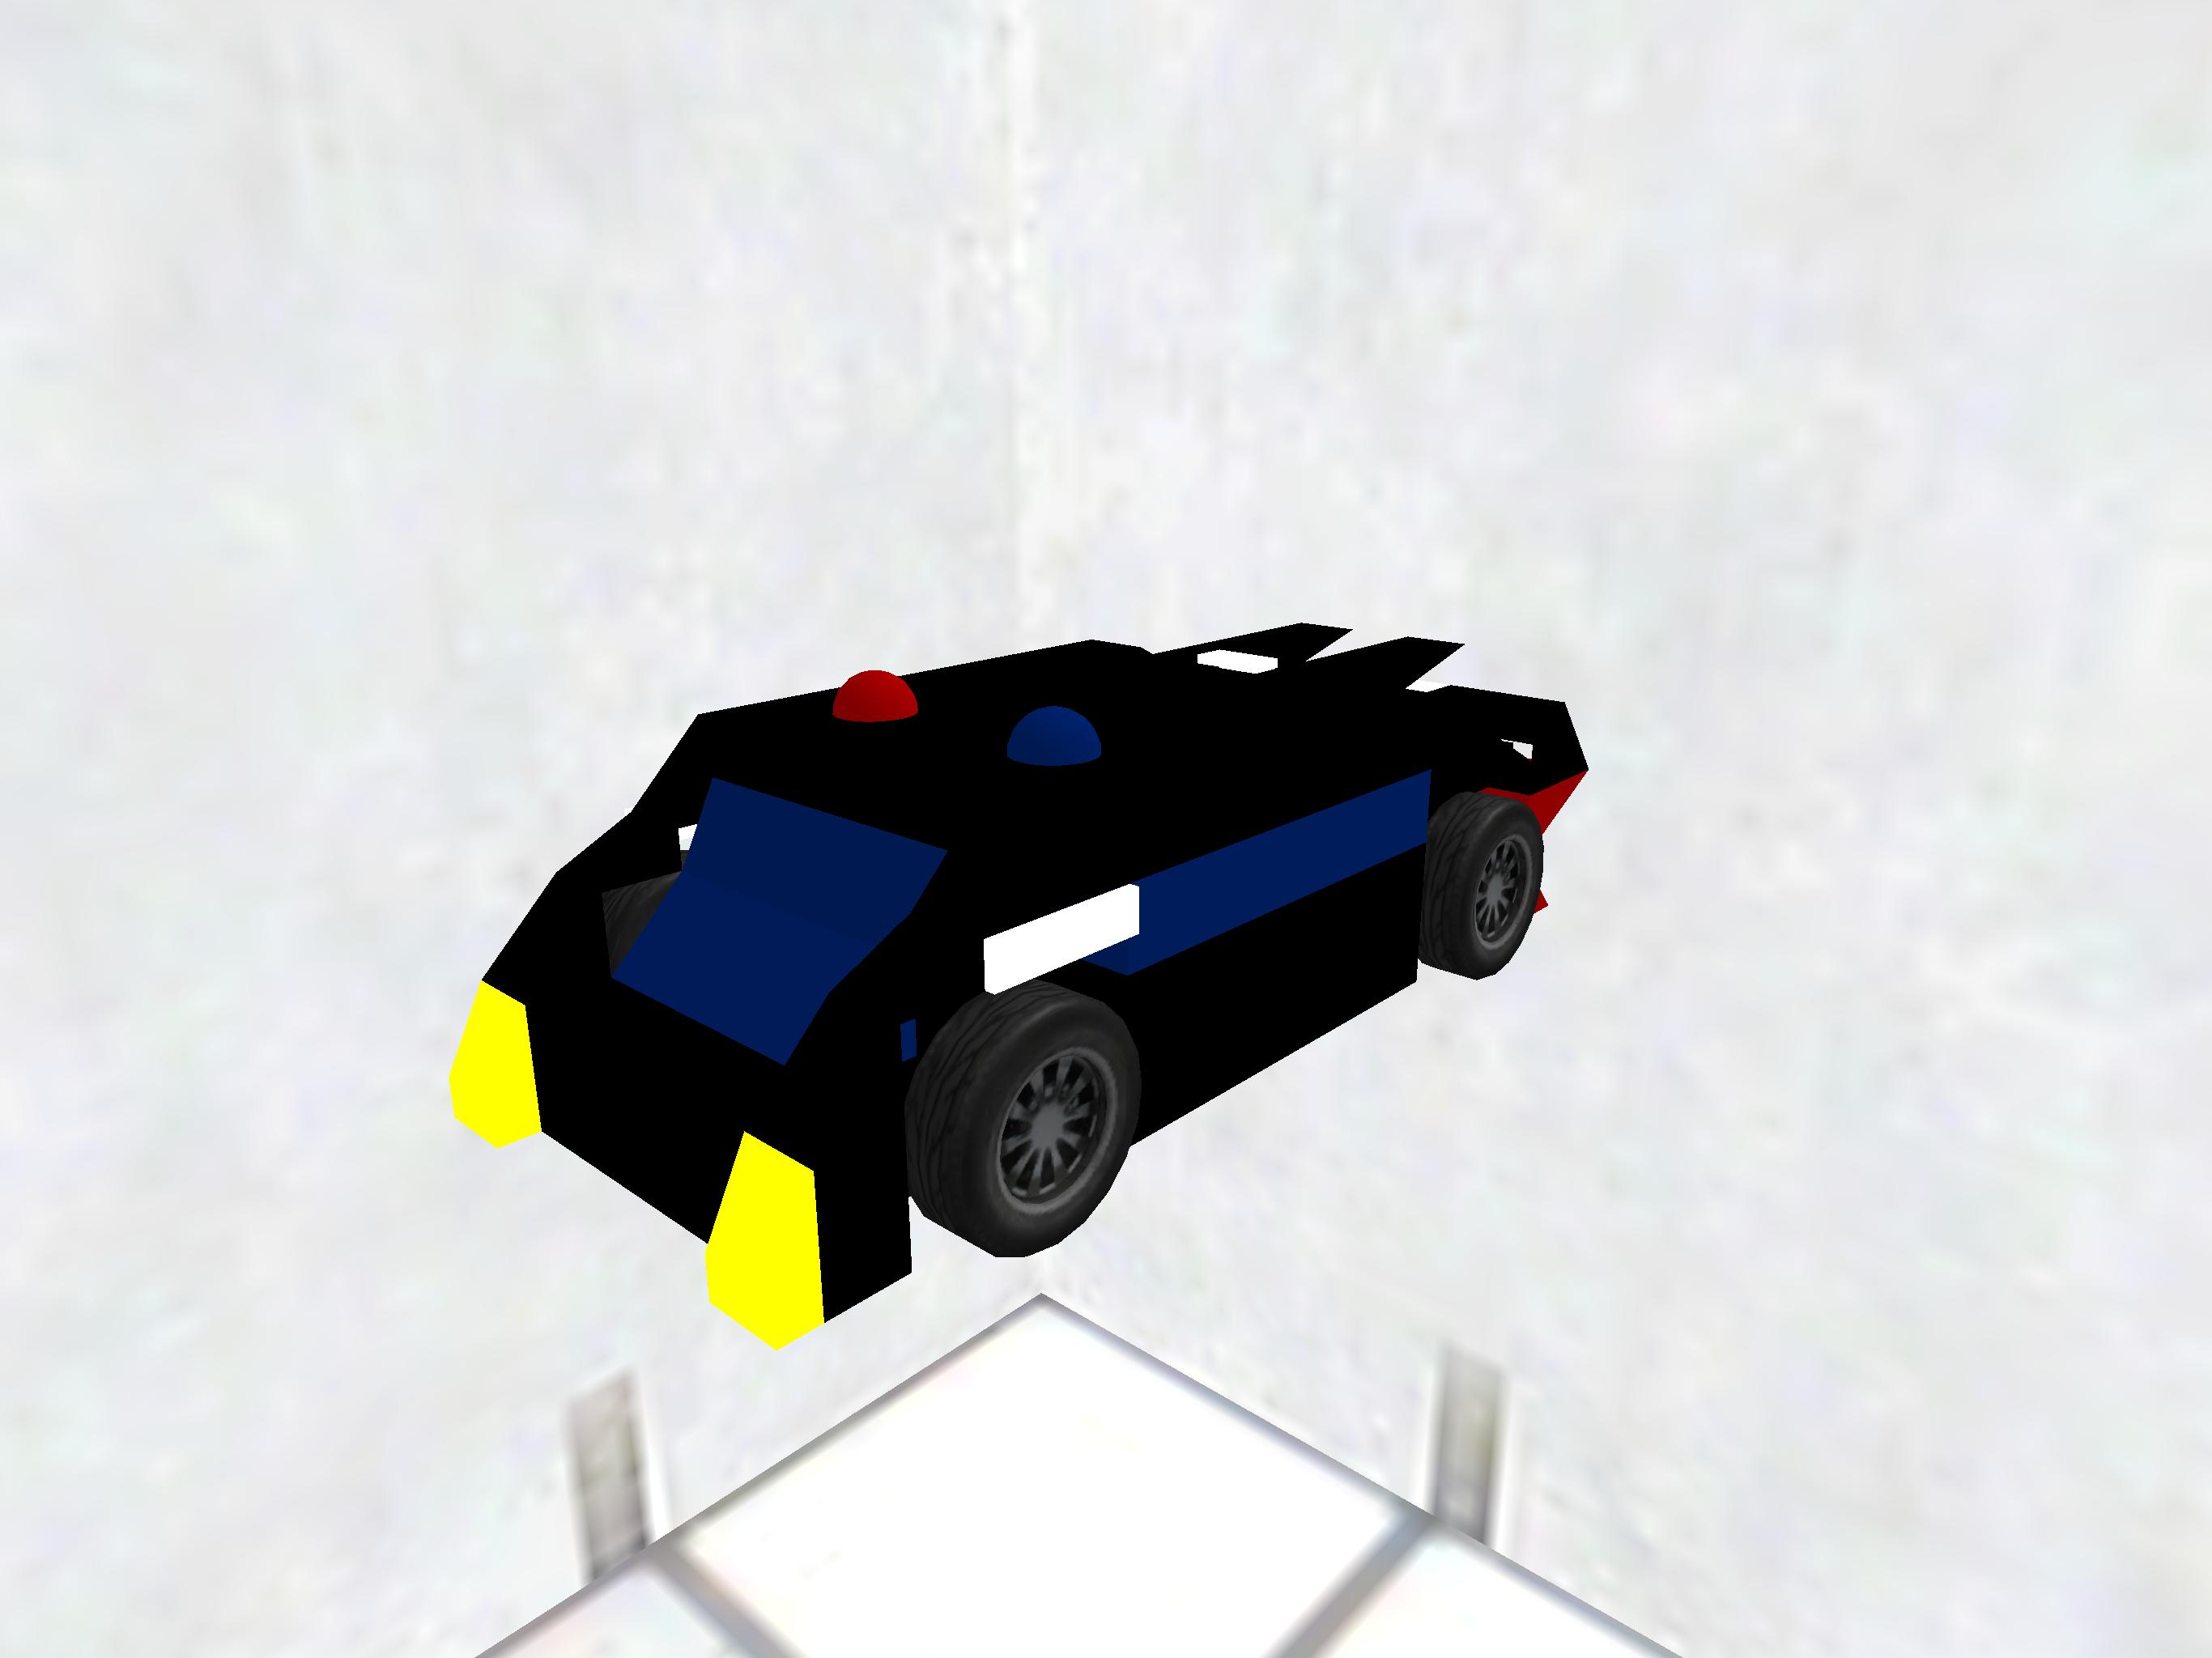 Orca concept car [Police 3]